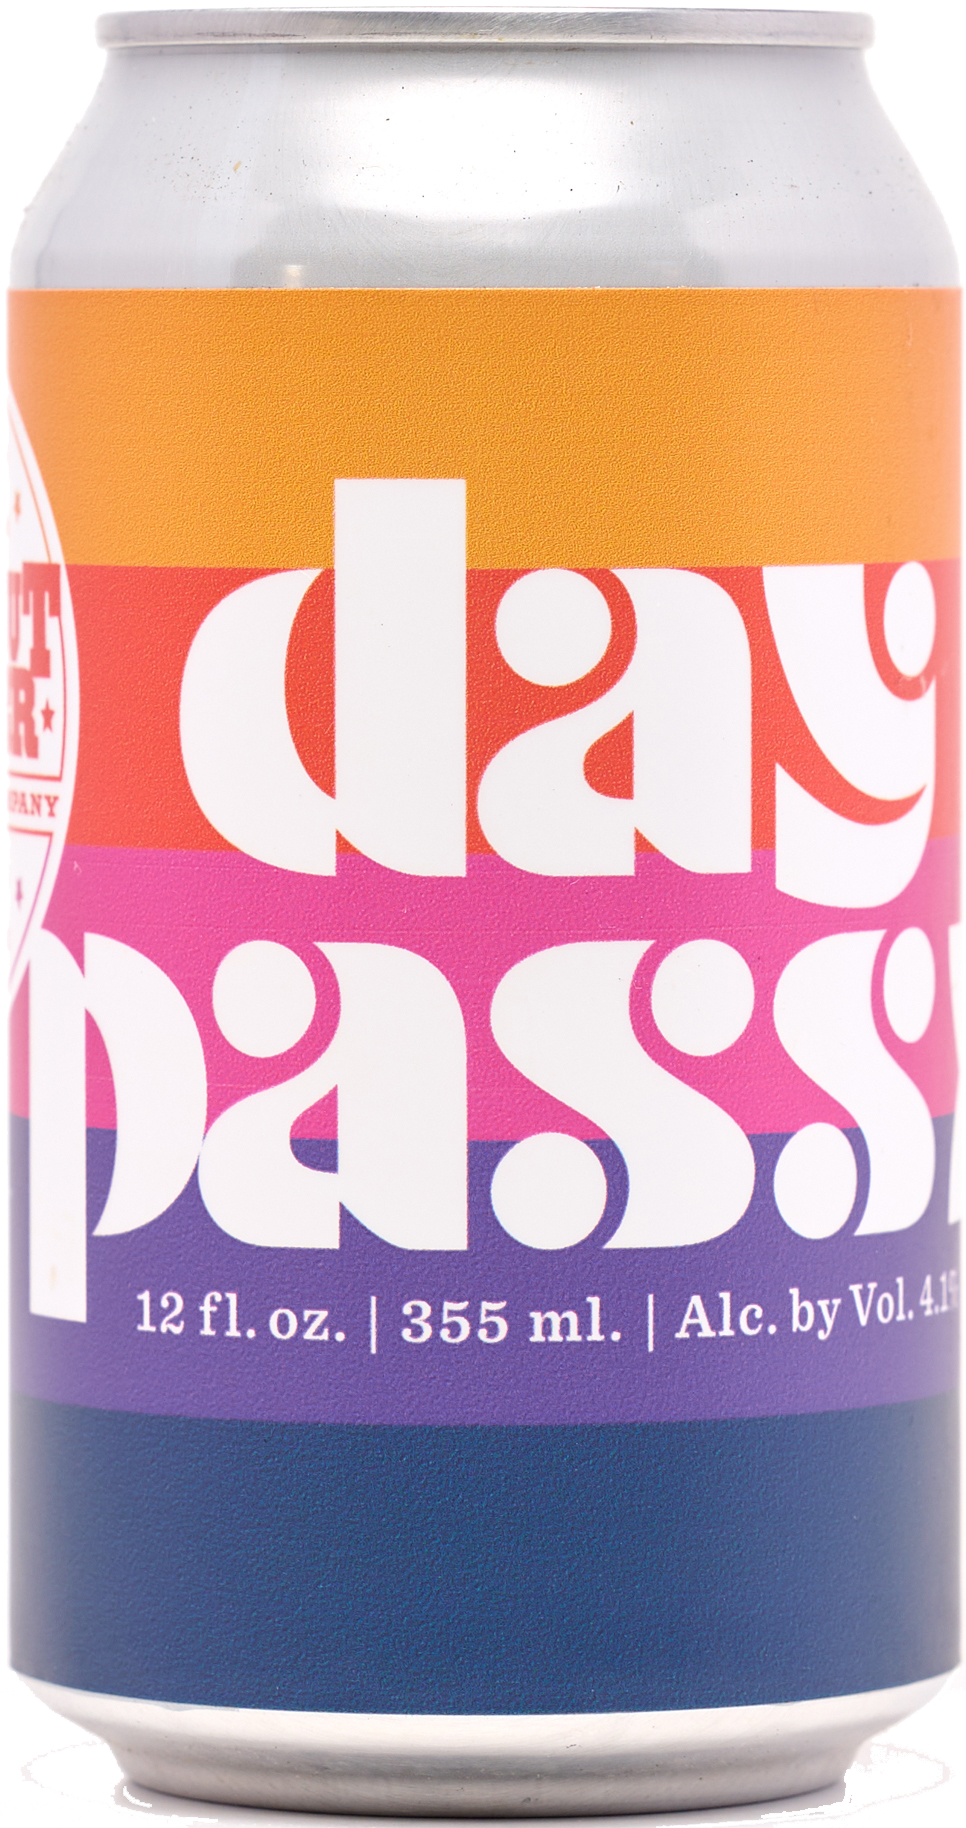 Day Pass